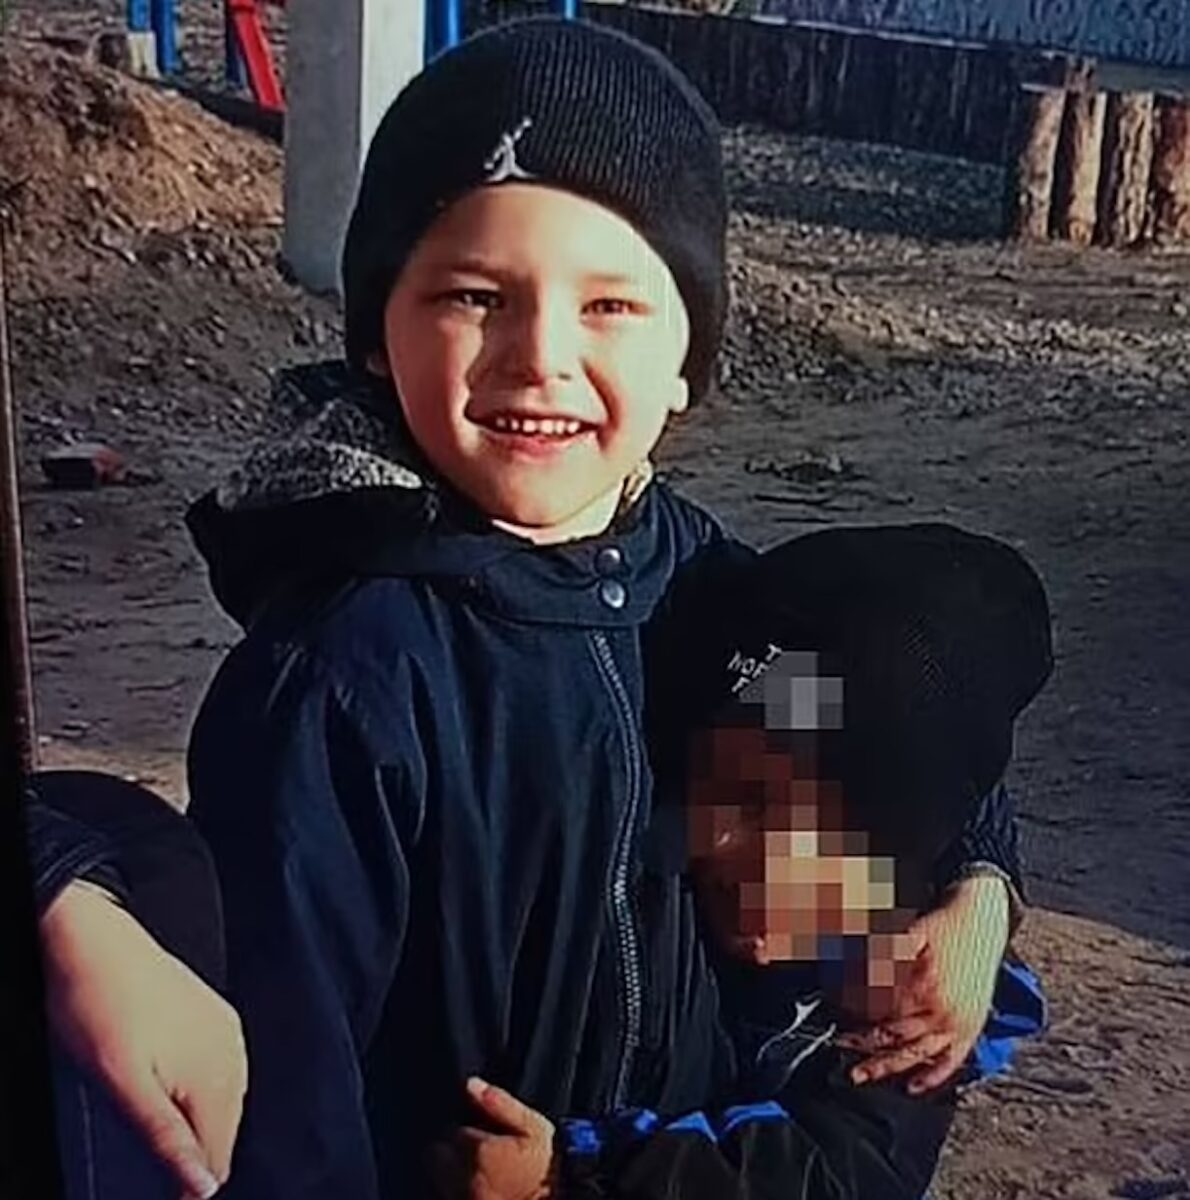 “È morto”. Bimbo di 4 anni ritrovato senza vita in una lavatrice